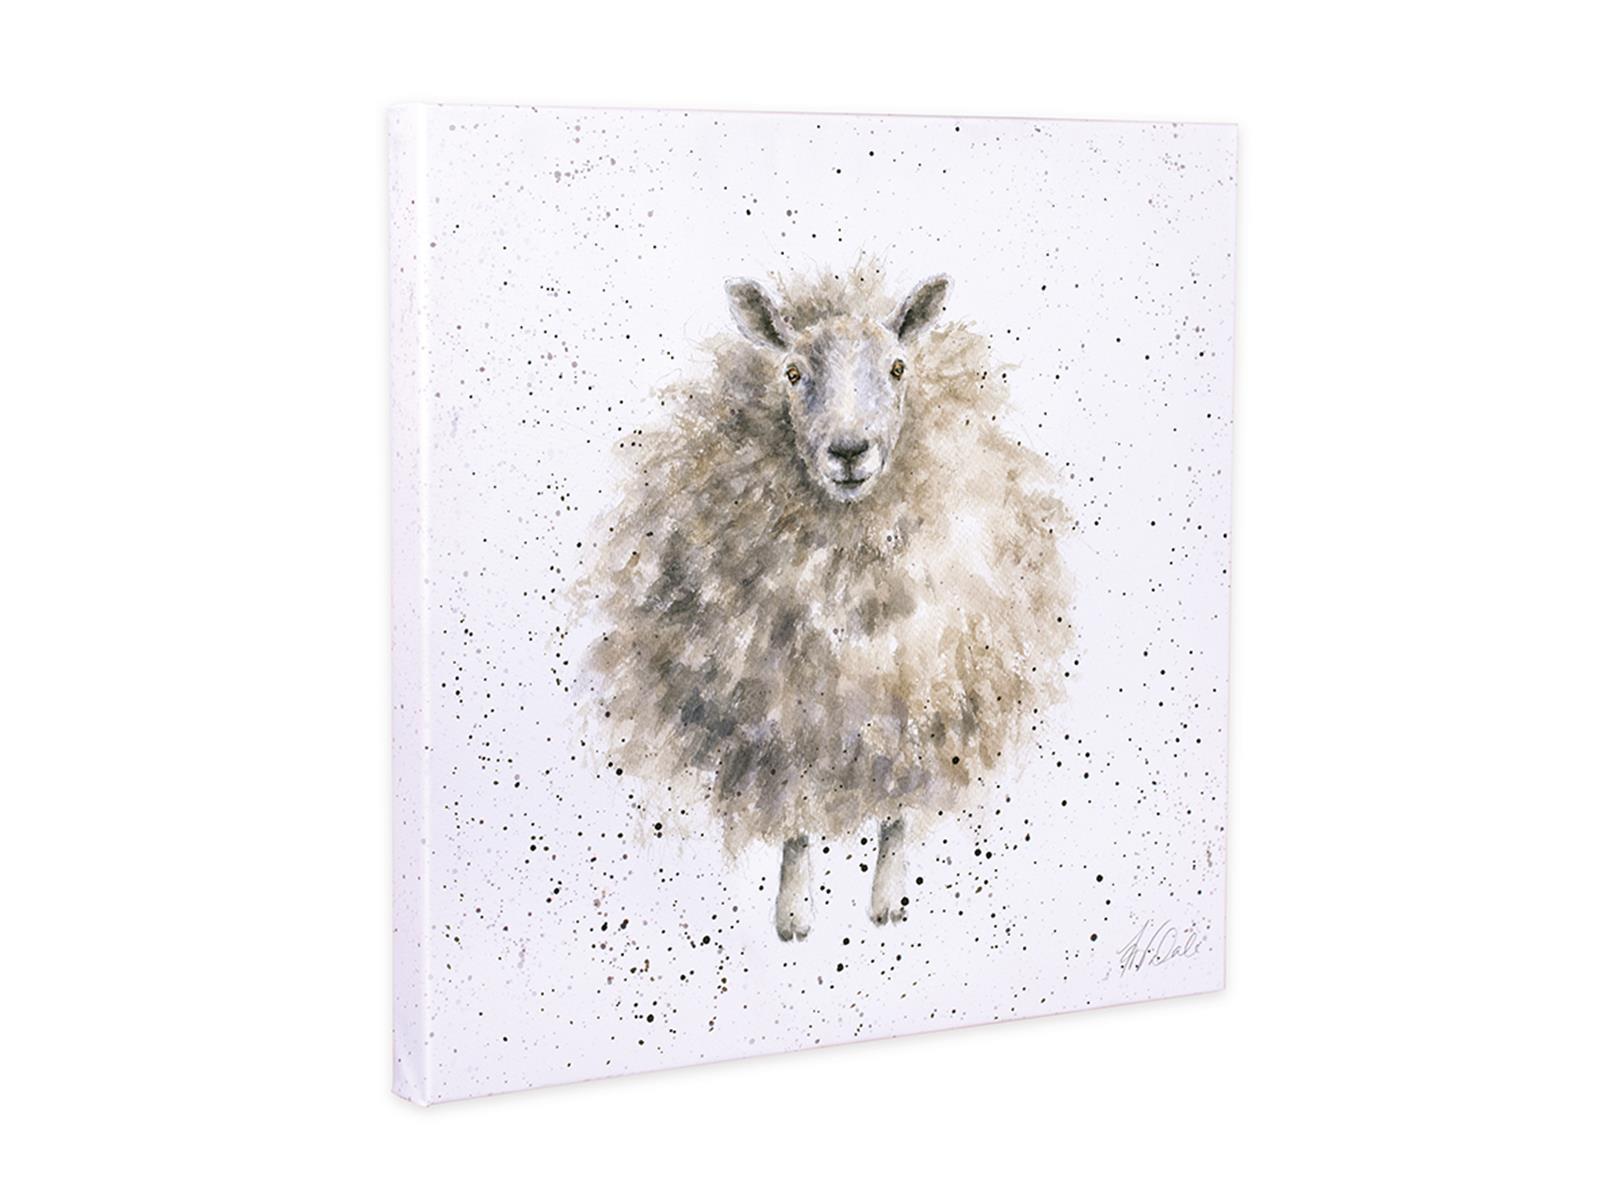 Wrendale Leinwand medium, Aufdruck Schaf, "The Wooly Jumper", 50x50cm